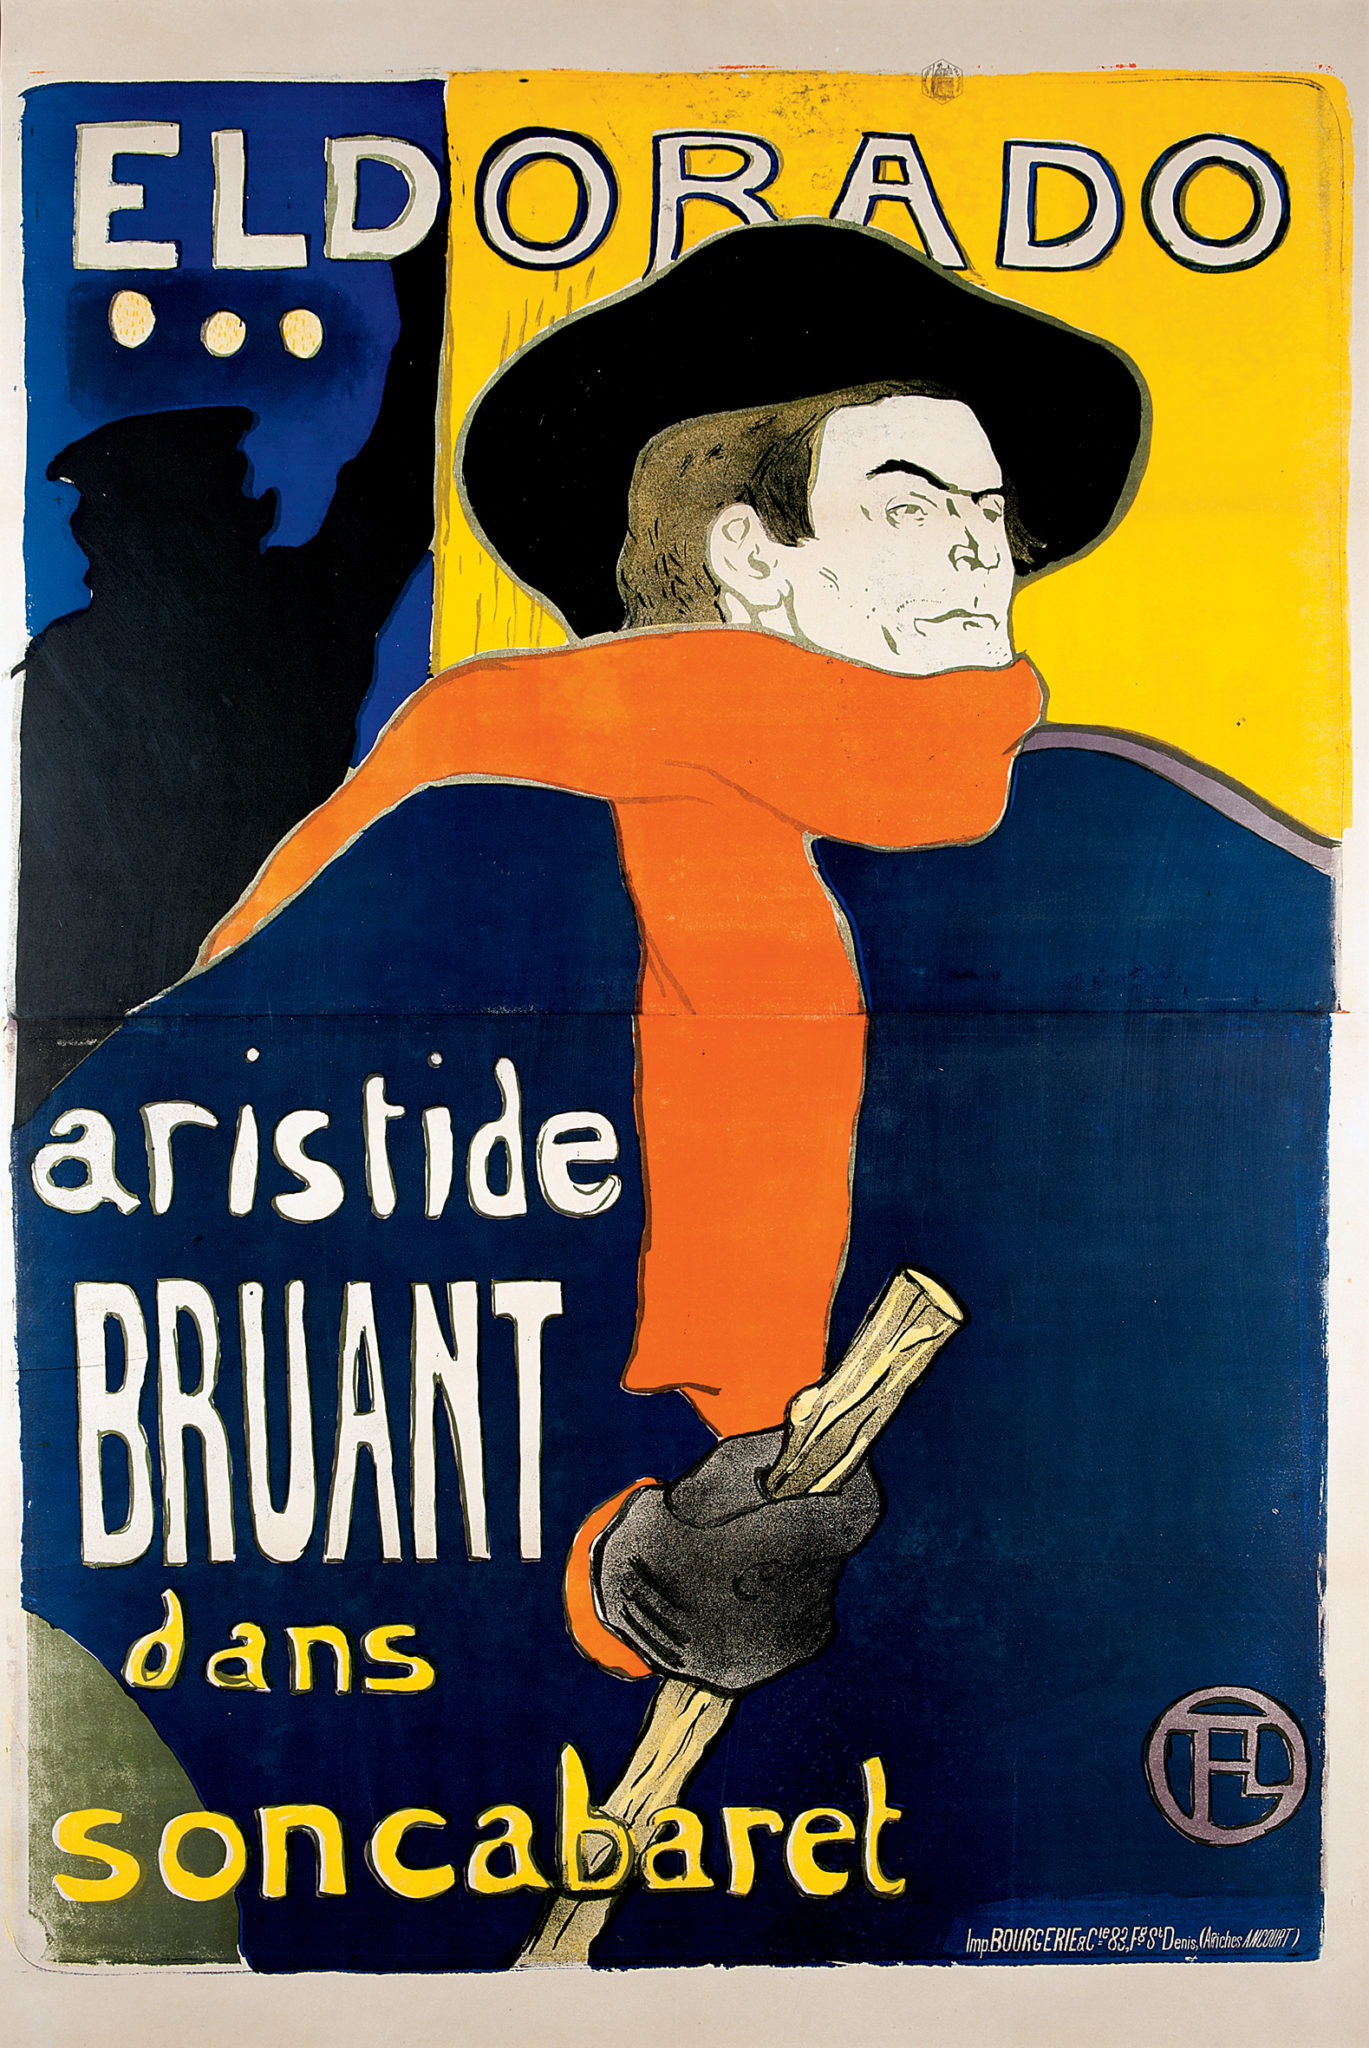 Henri de Toulouse-Lautrec Eldorado, A. Bruant dans son Cabaret 1892 Color Lithography, 138x96 cm © Herakleidon Museum, Athens Greece